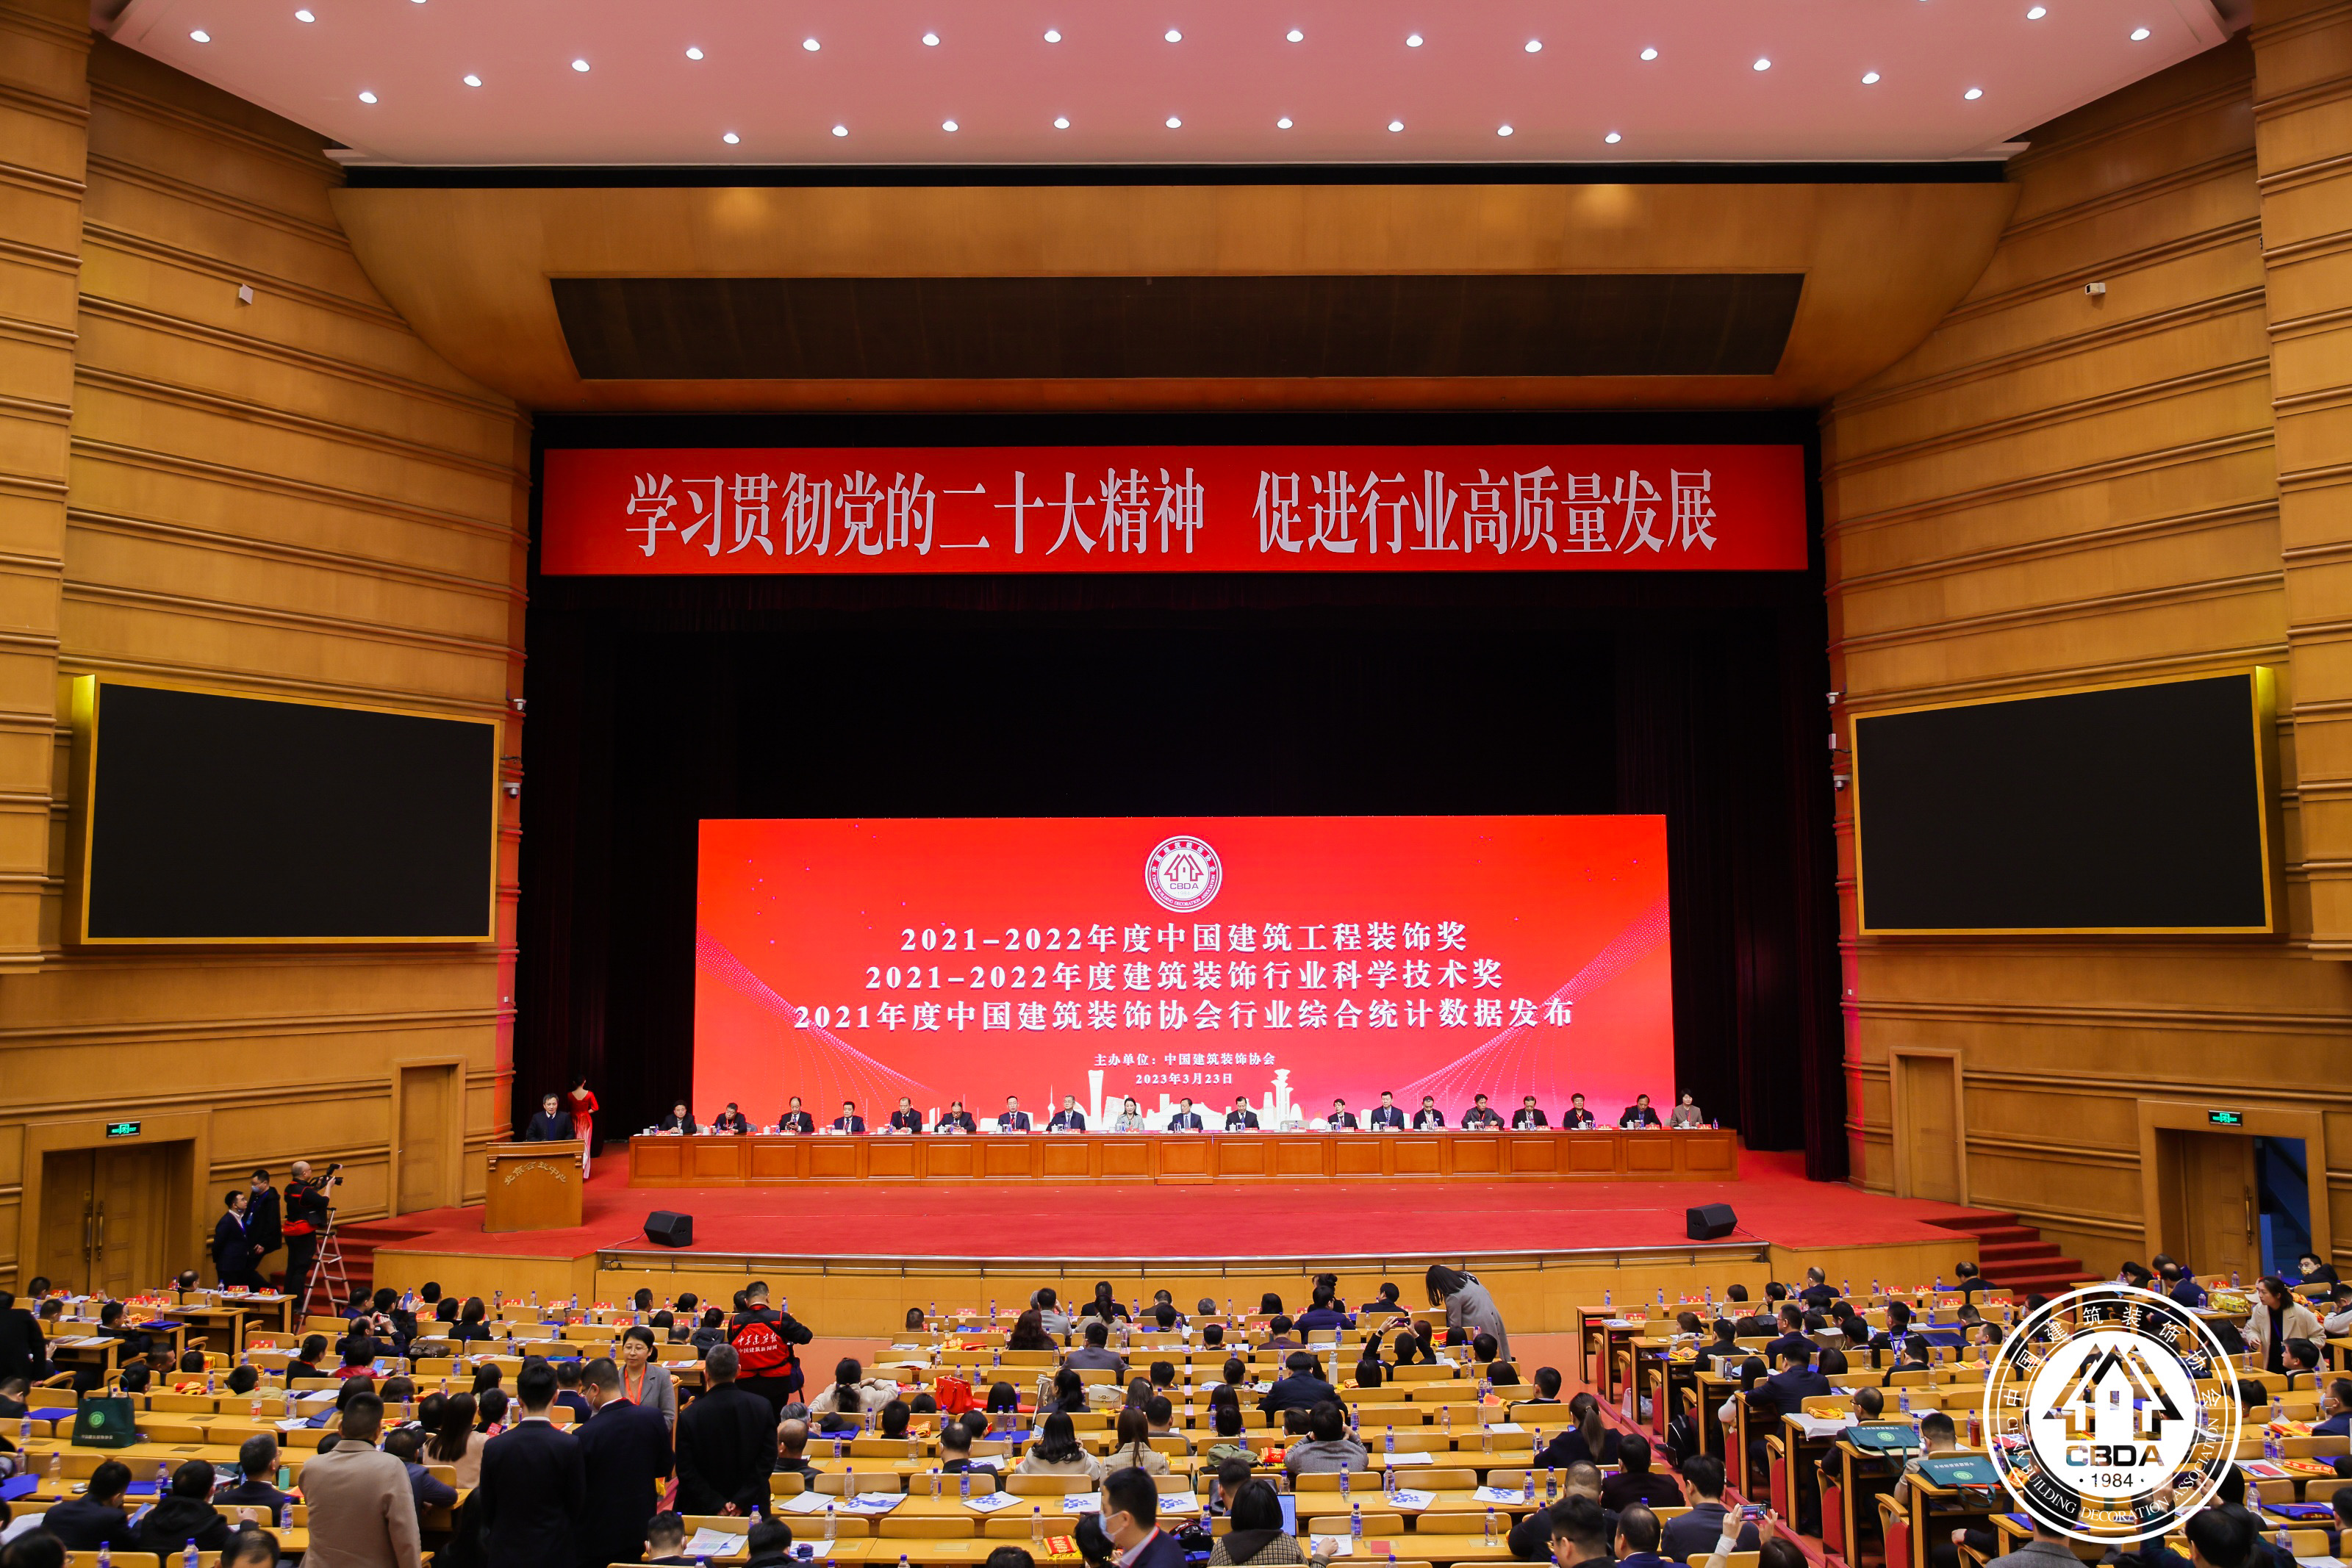 華麗美登參加2021-2022中國建筑裝飾獎頒獎大會